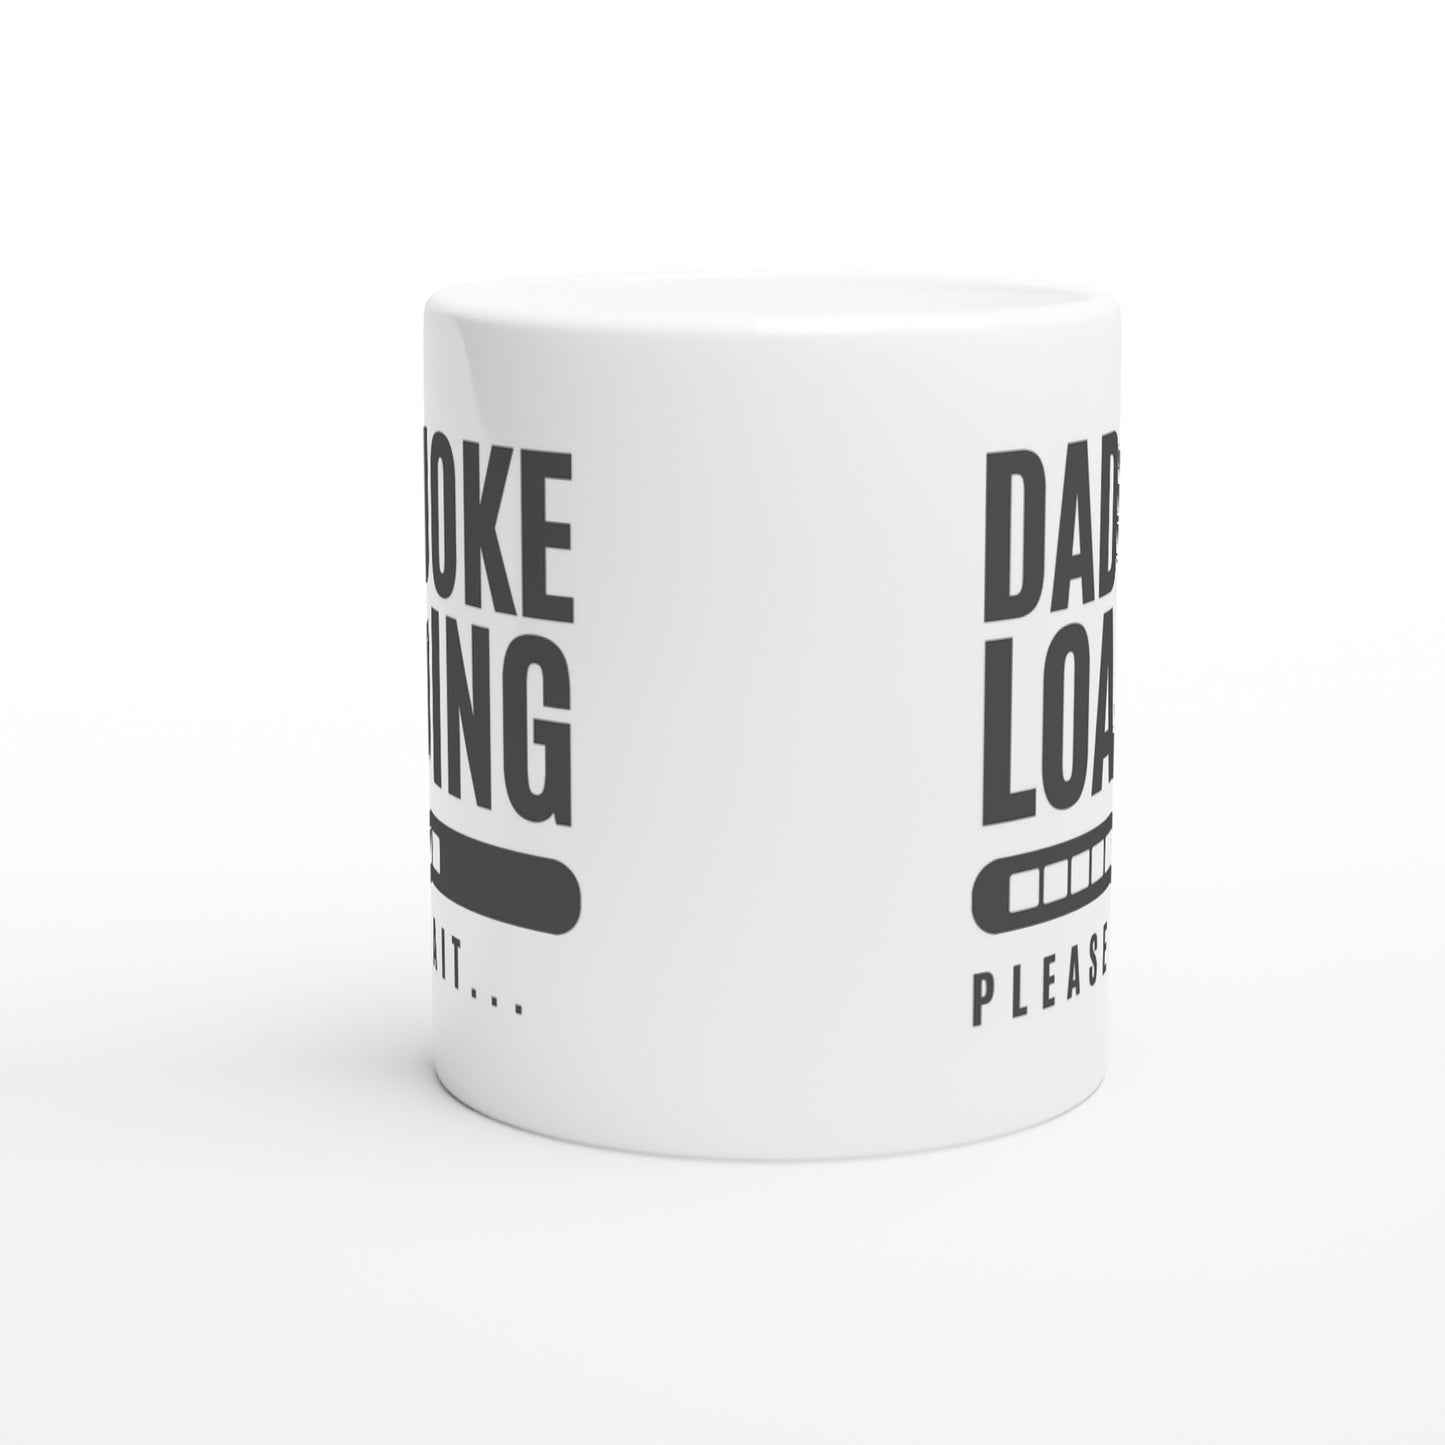 Dad Joke Loading - White 11oz Ceramic Mug White 11oz Mug Dad